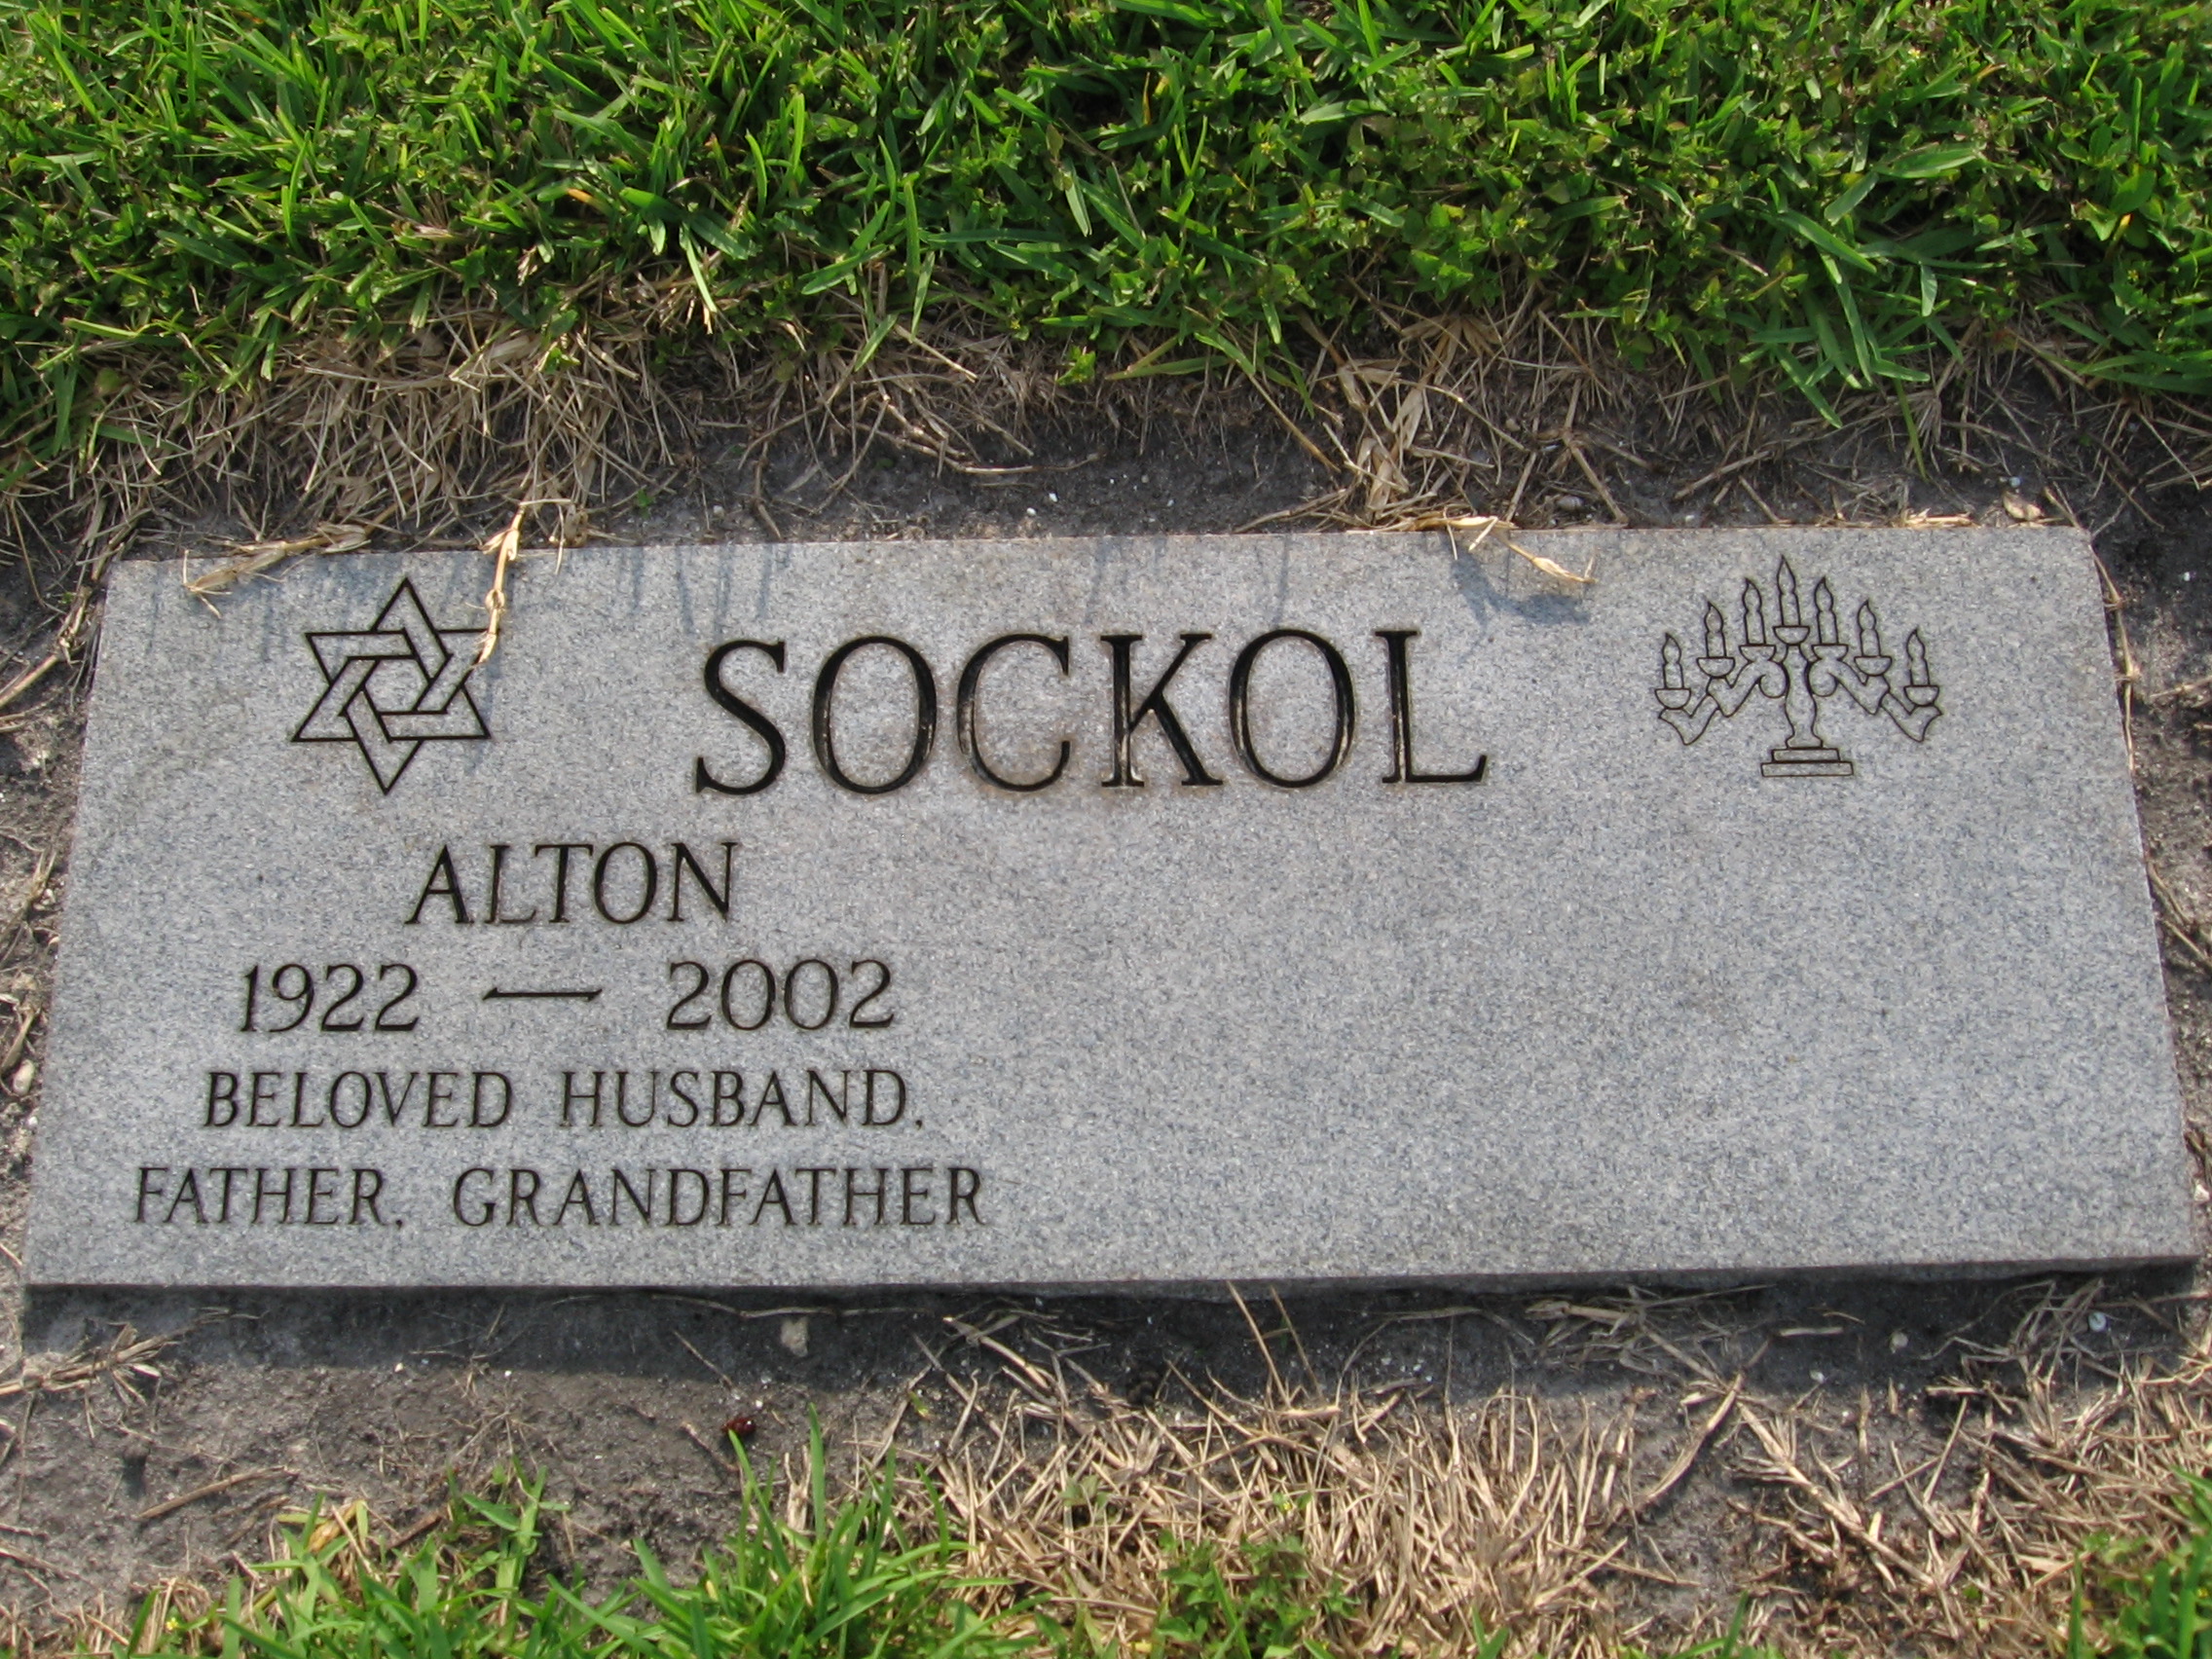 Alton Sockol